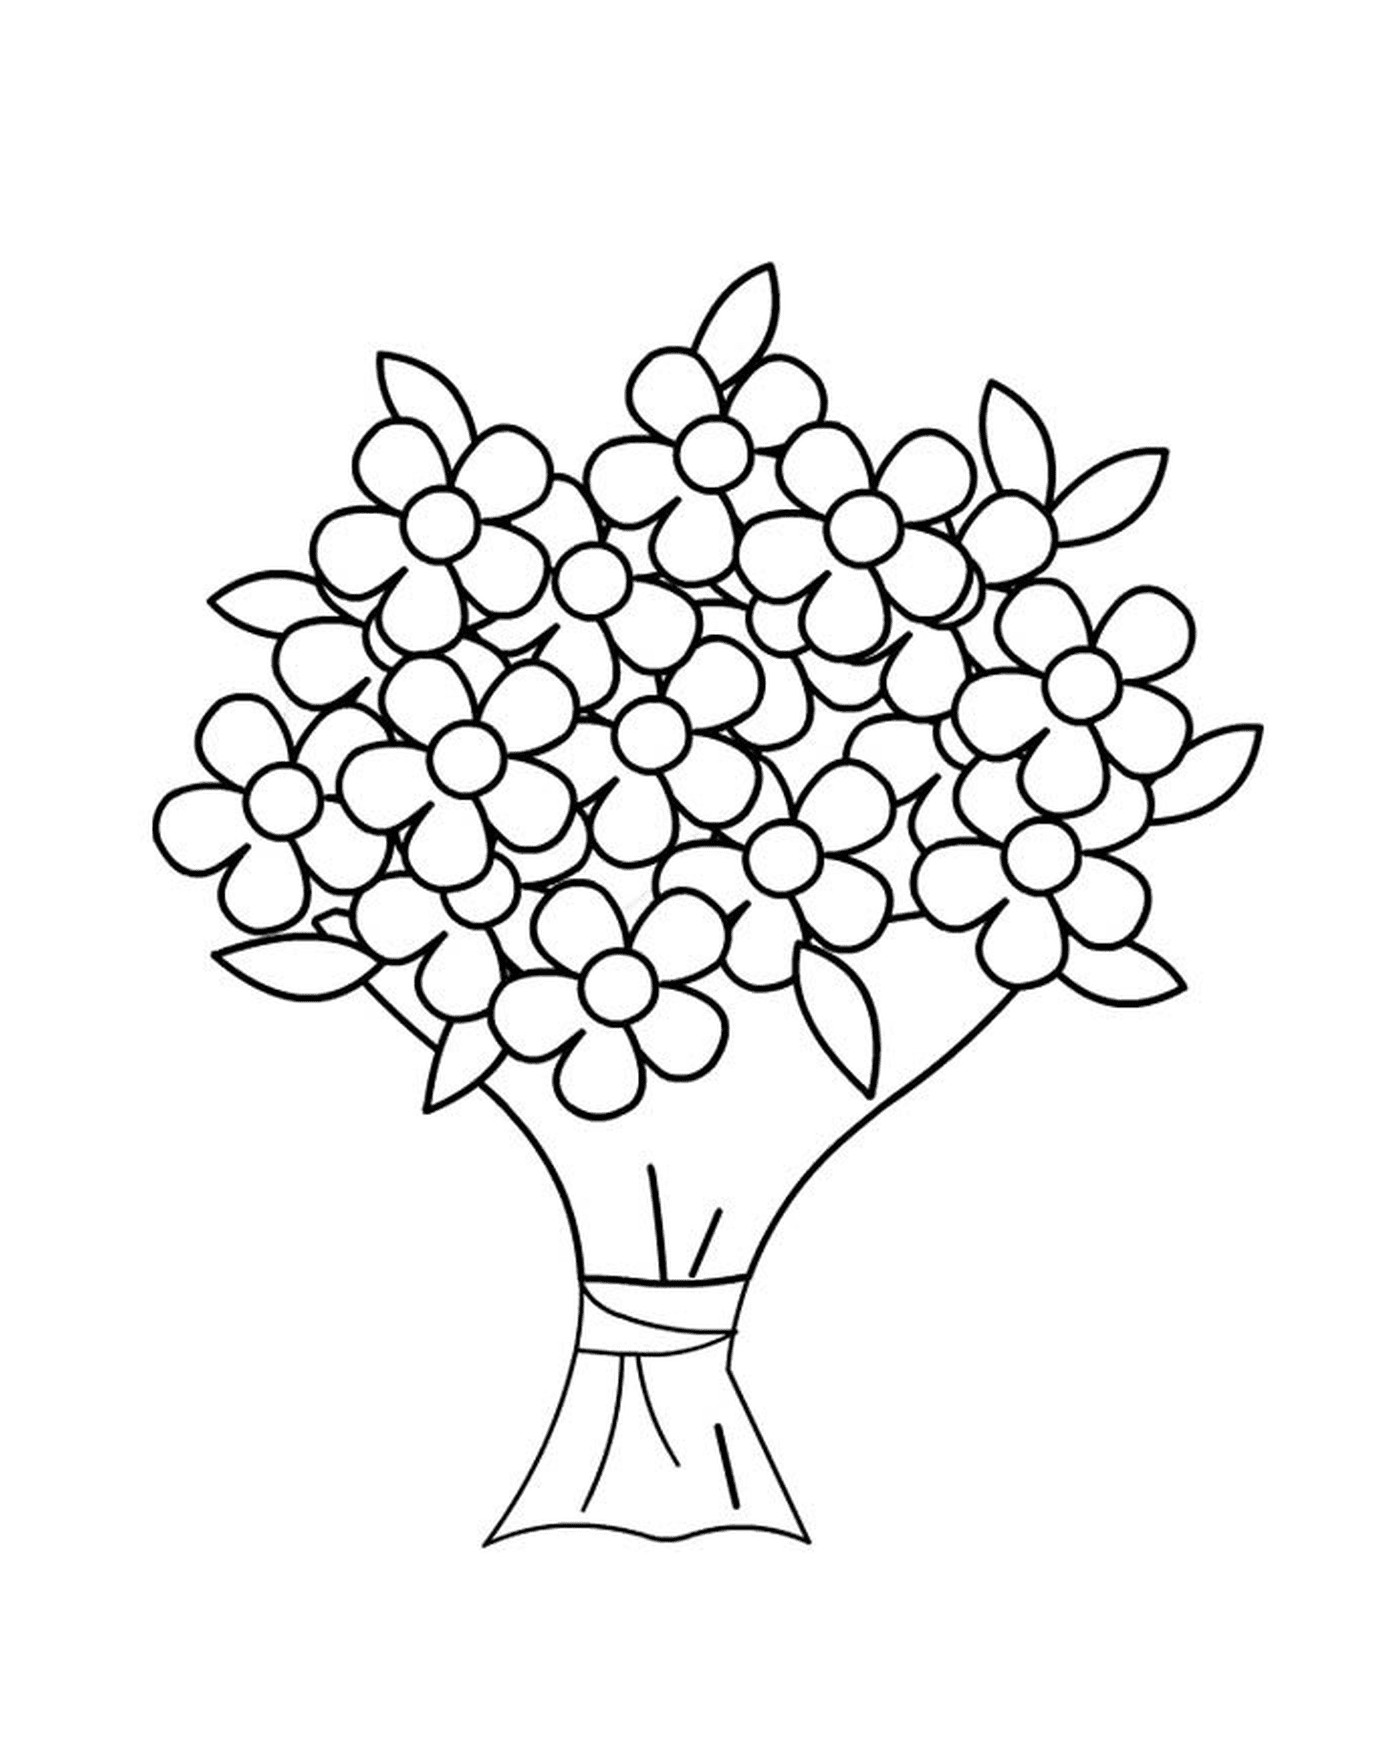  Ein einfacher Blumenstrauß mit Gänseblümchen 